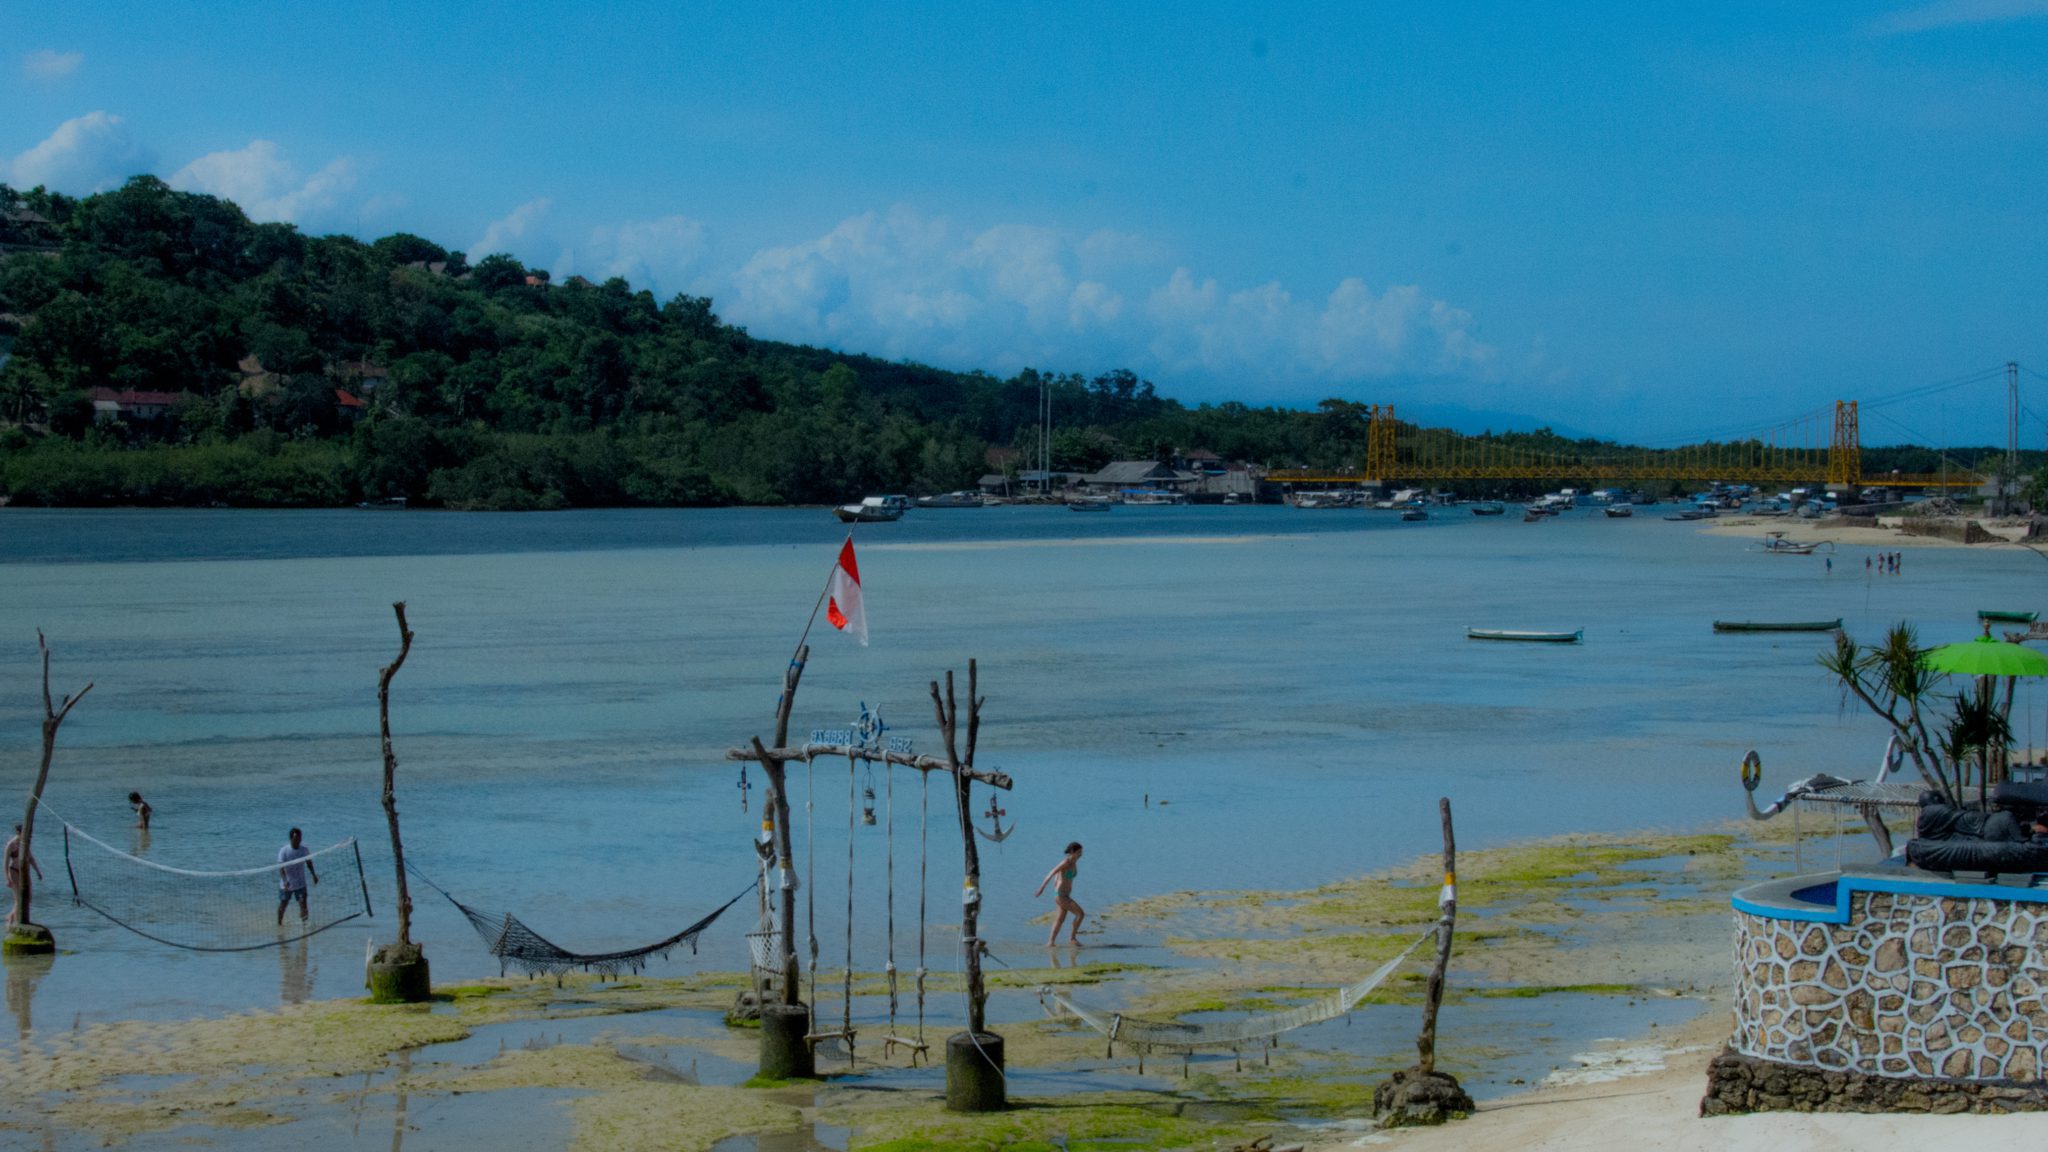 De zeestraat tussen Nusa Lembongan en Nusa Ceningan, met op de achtergrond de beruchte gele hangbrug.